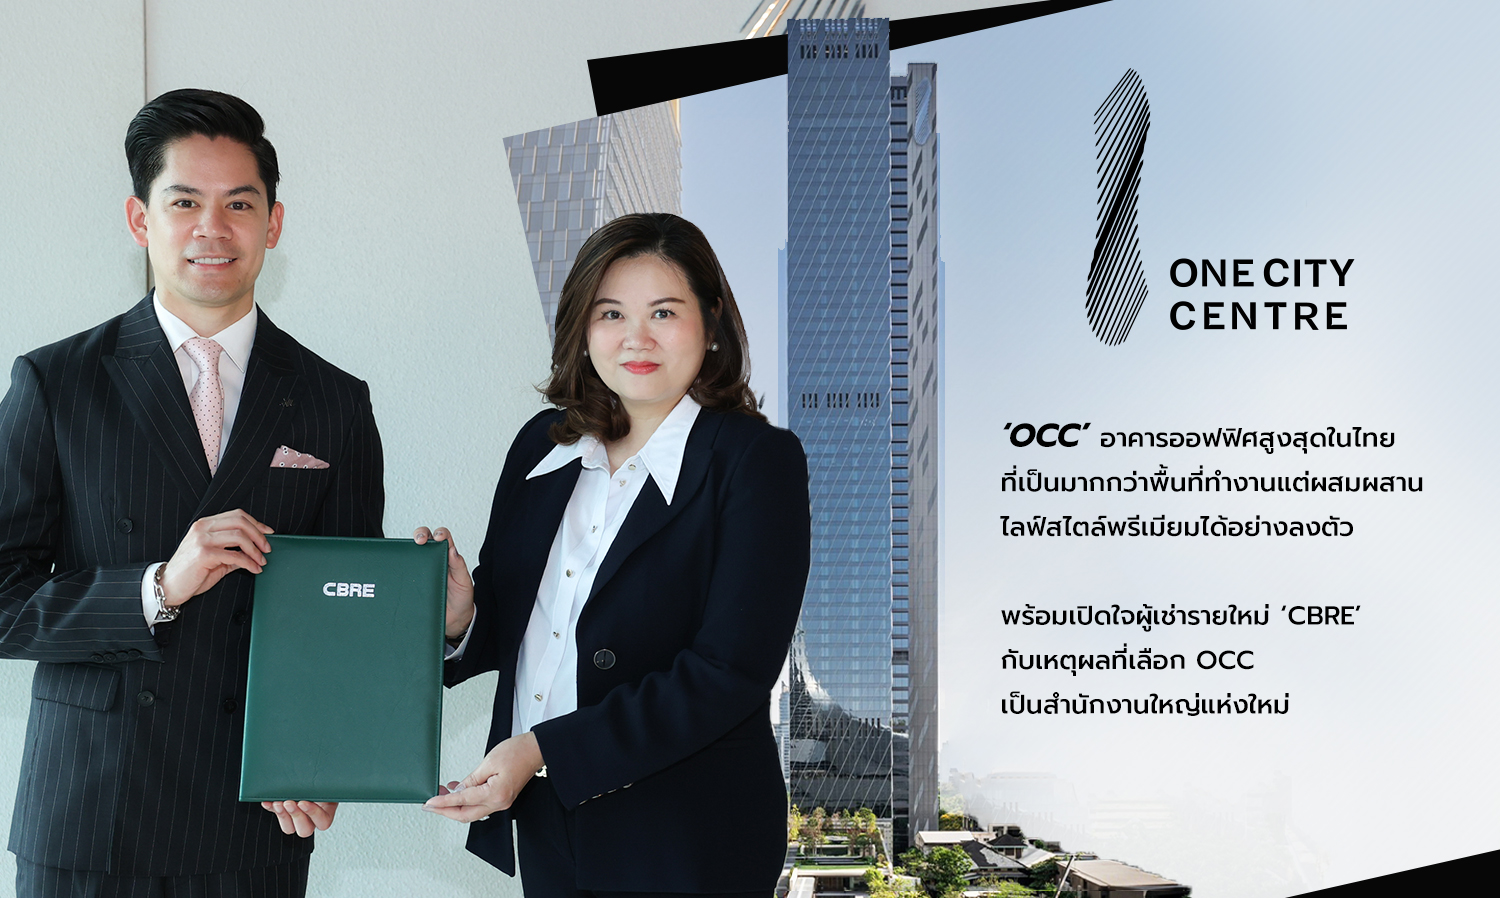 OCC อาคารออฟฟิศสูงสุดในไทย เปิดใจผู้เช่ารายใหม่ CBRE กับเหตุผลที่เลือก OCC เป็นสำนักงานใหญ่ แห่งใหม่